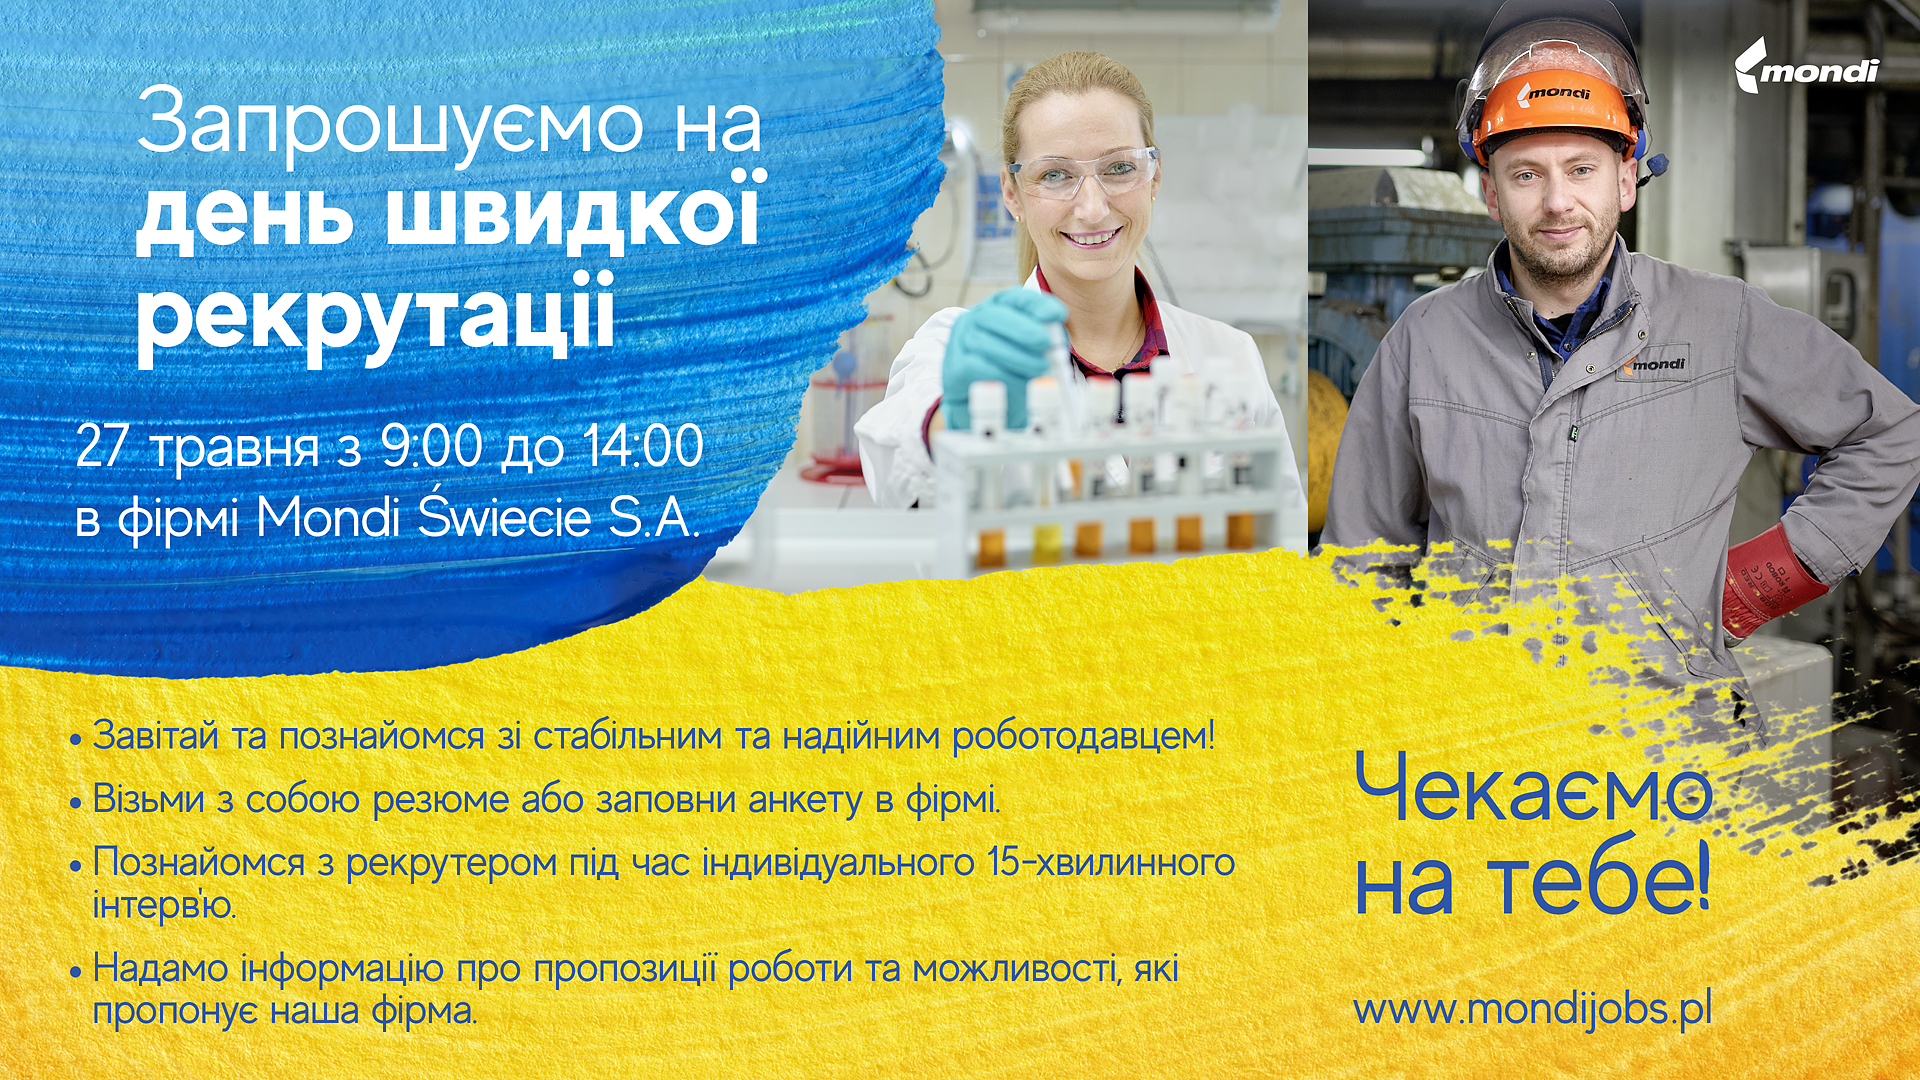 Obrazek dla: Dzień Szybkiej Rekrutacji w Mondi Świecie S.A. dla obywateli Ukrainy